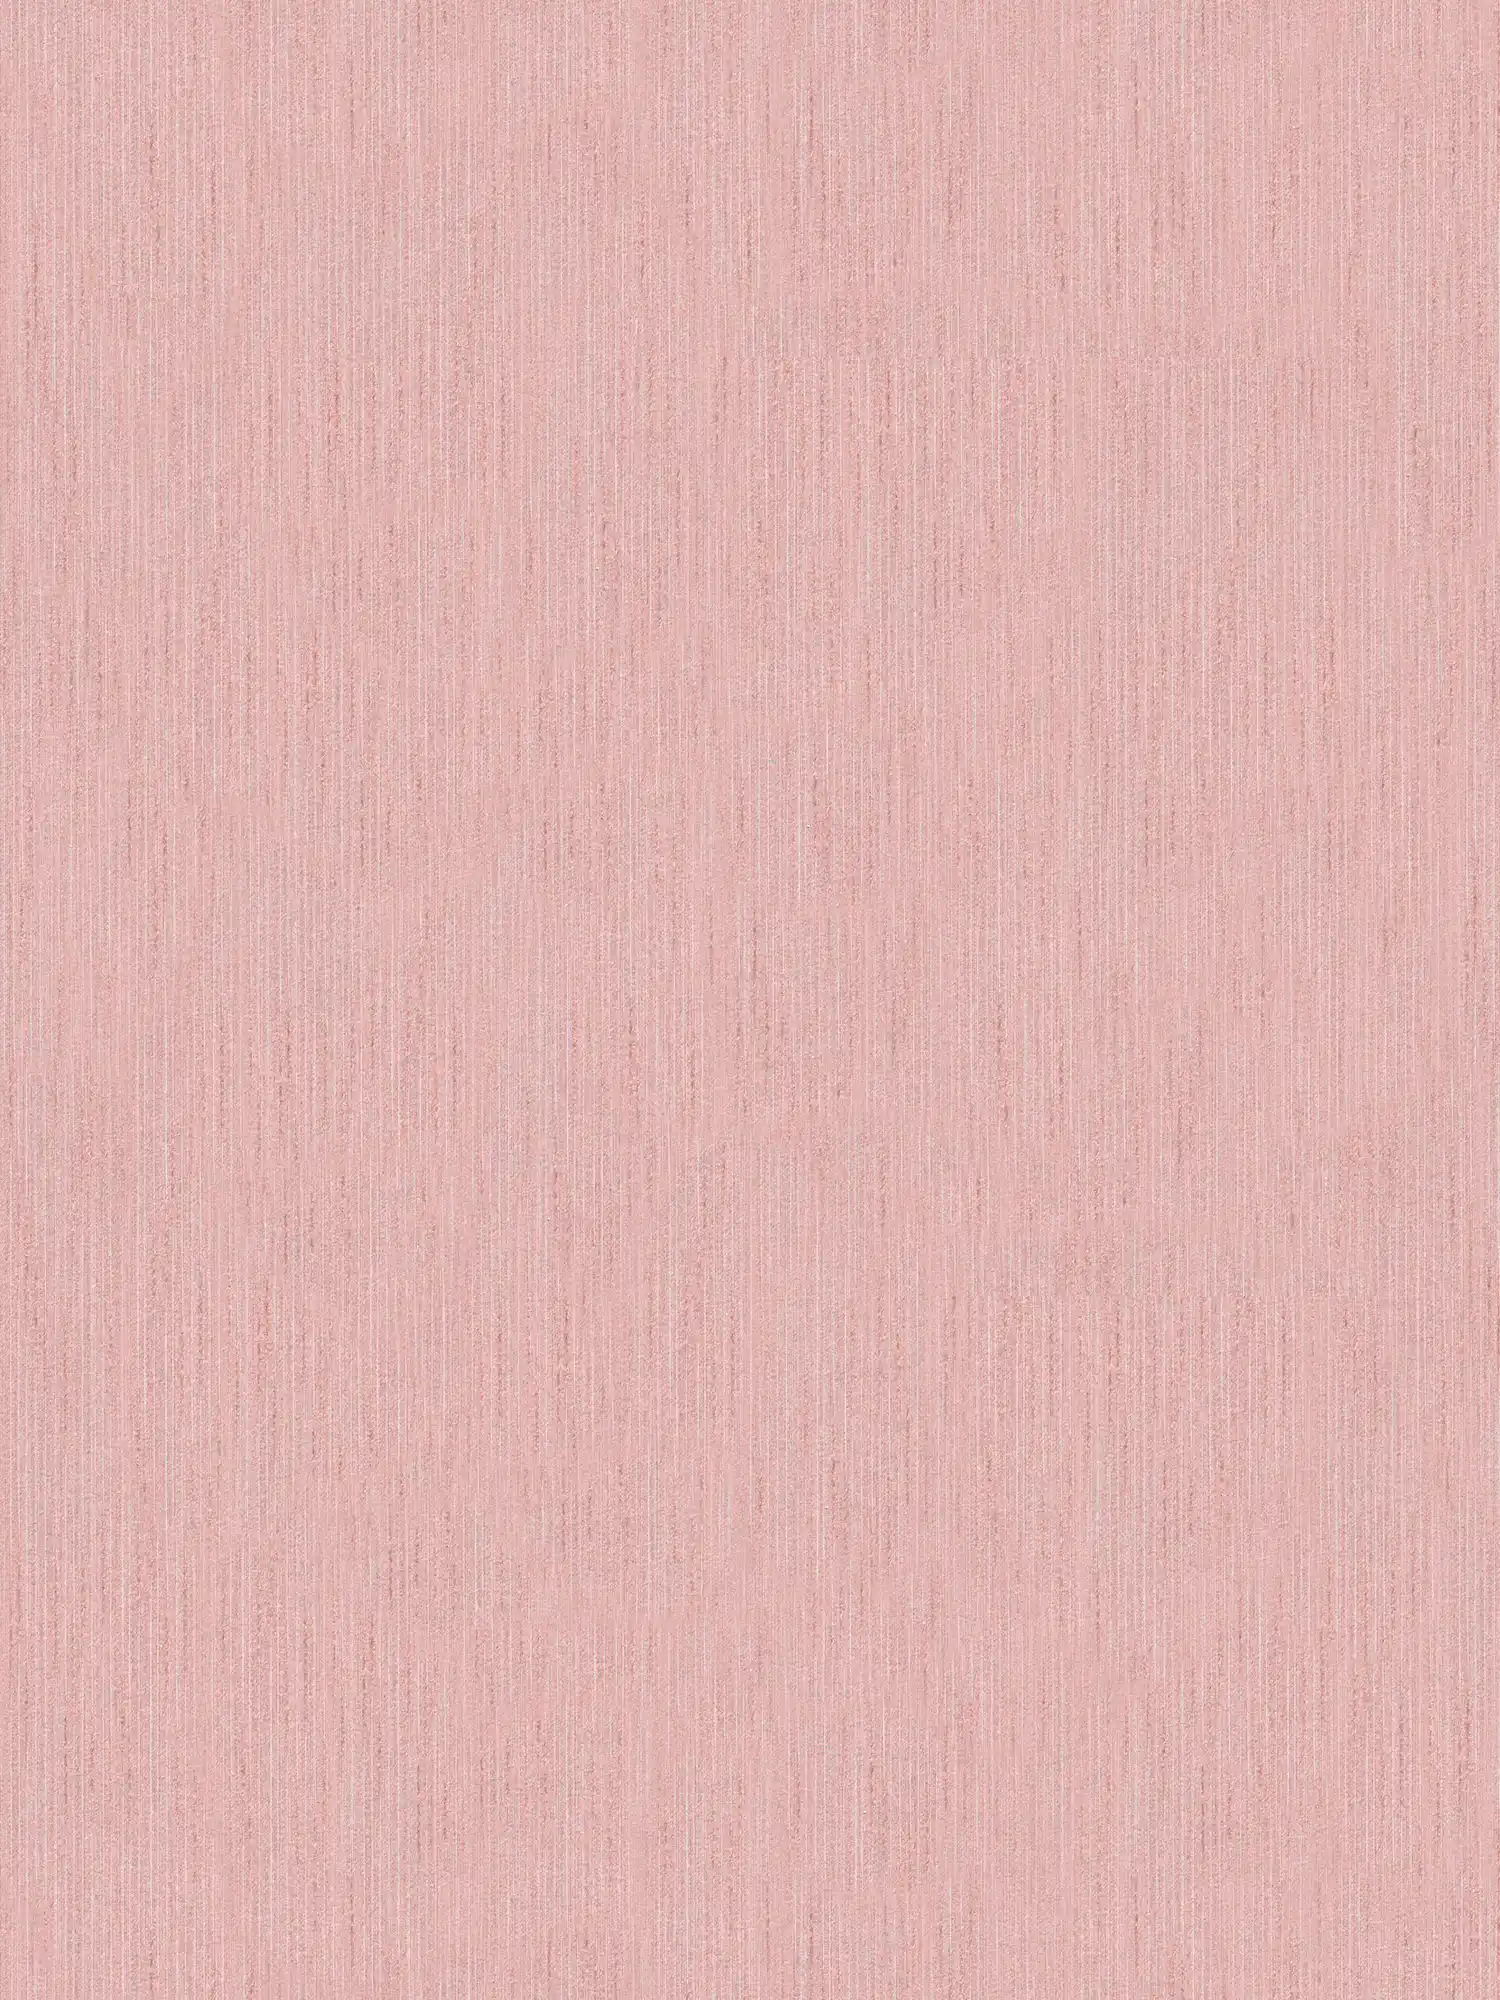 Carta da parati rosa antico tinta unita con effetto texture
